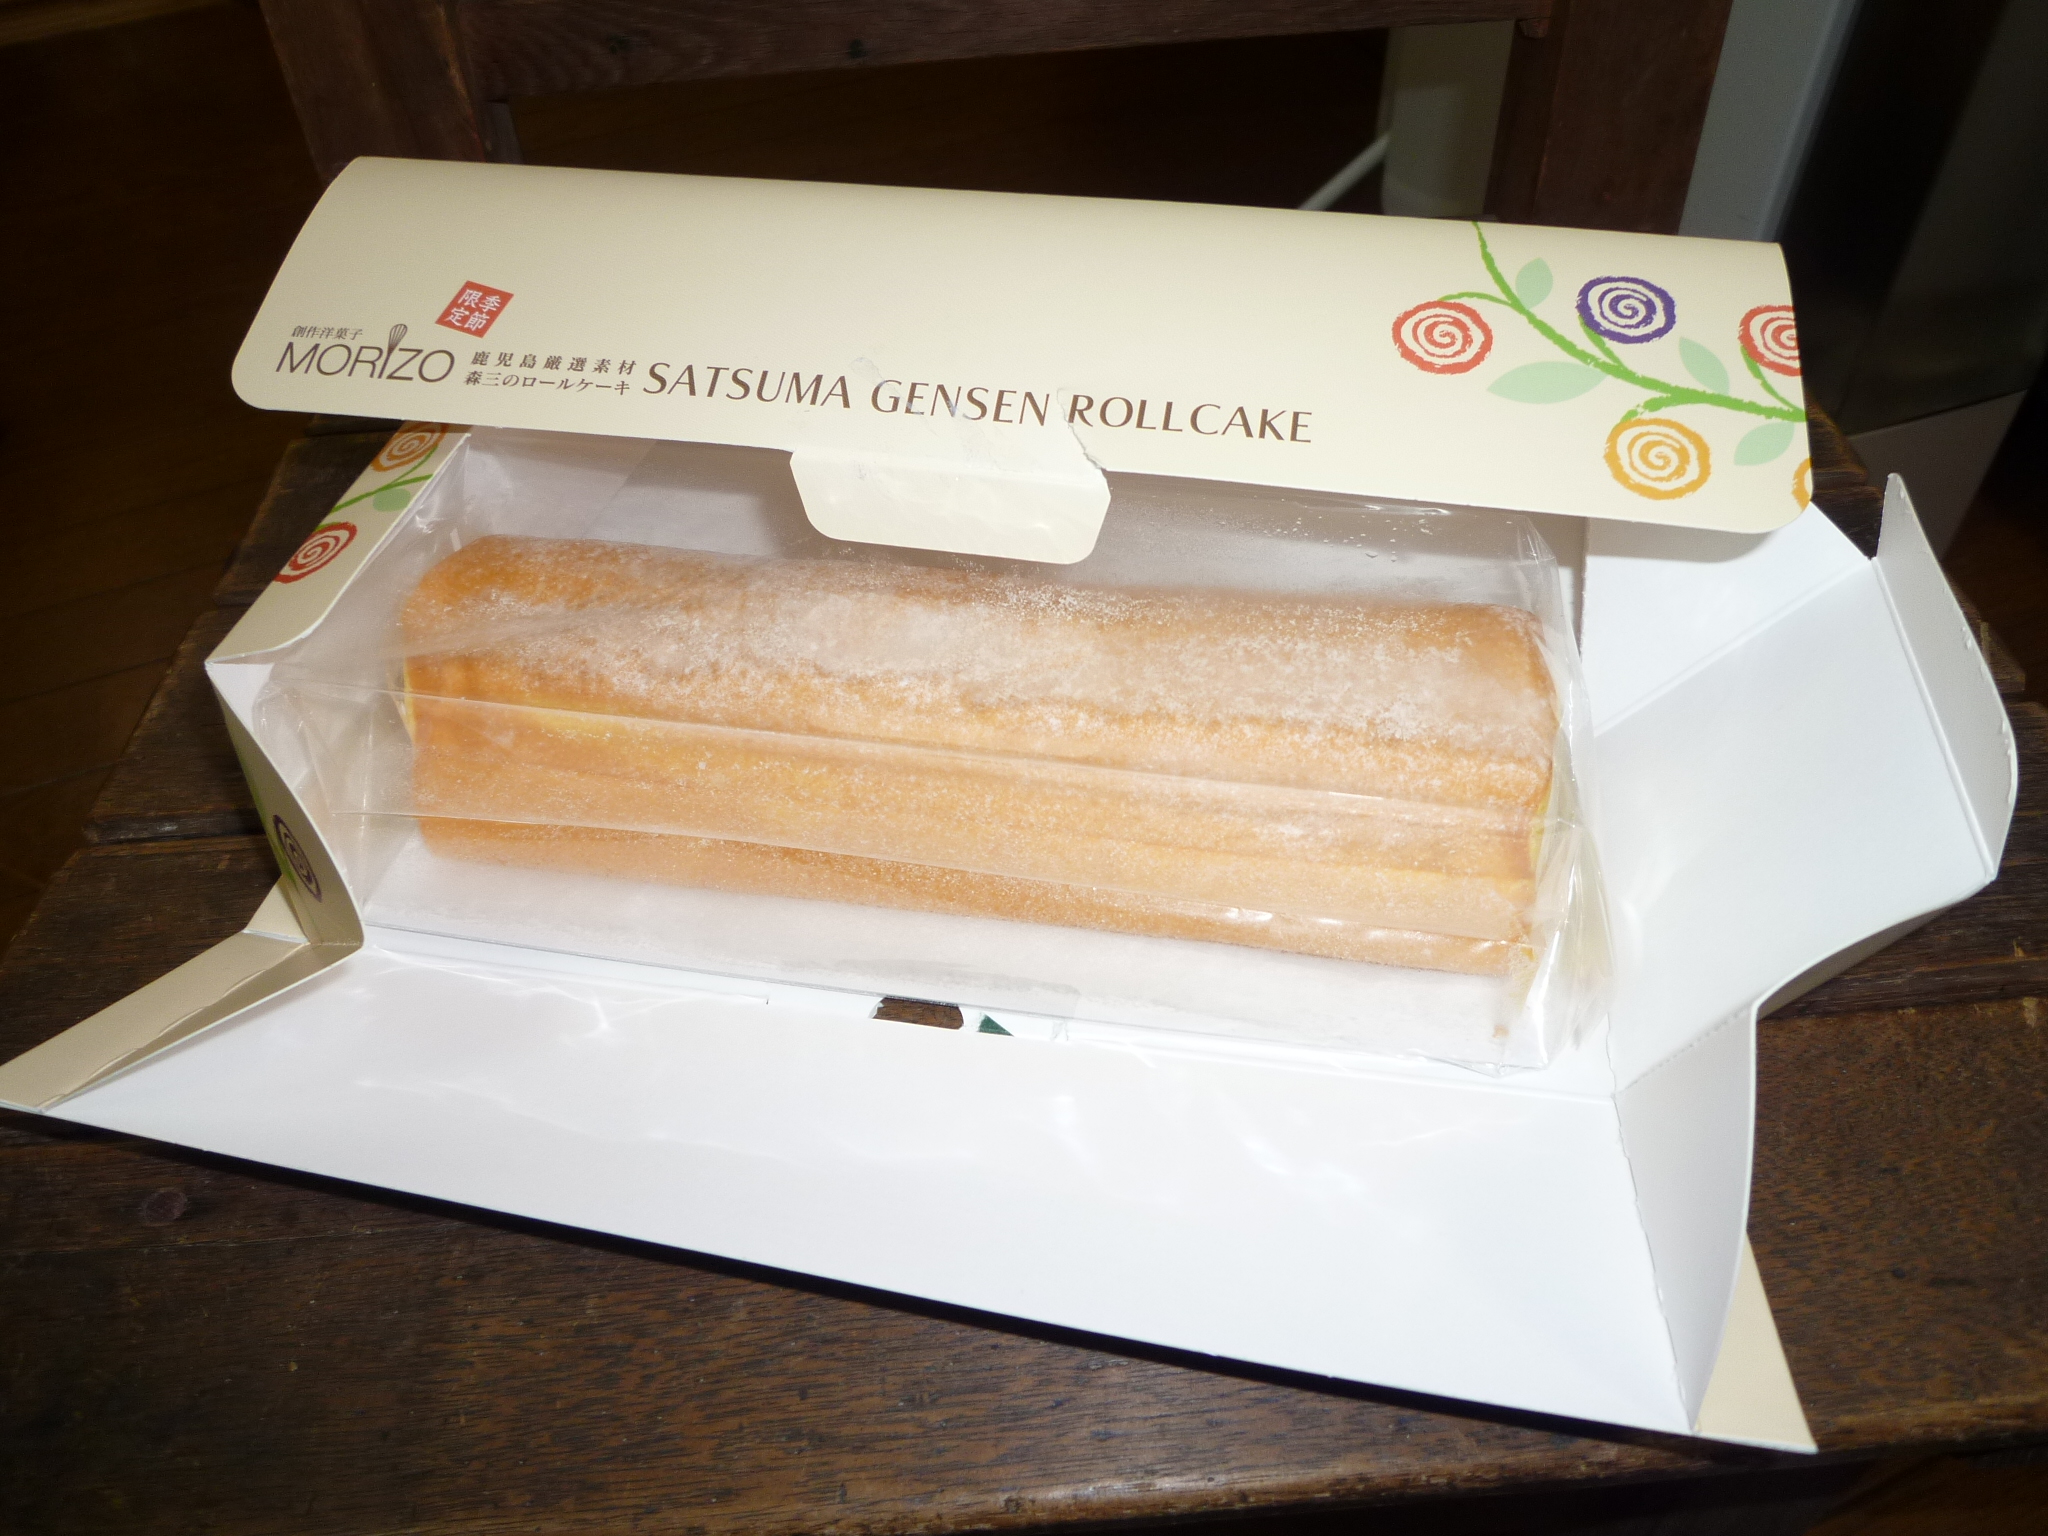 森三の安納芋のロールケーキ 九州物産展 カンマネの安心できるかわからないブログ